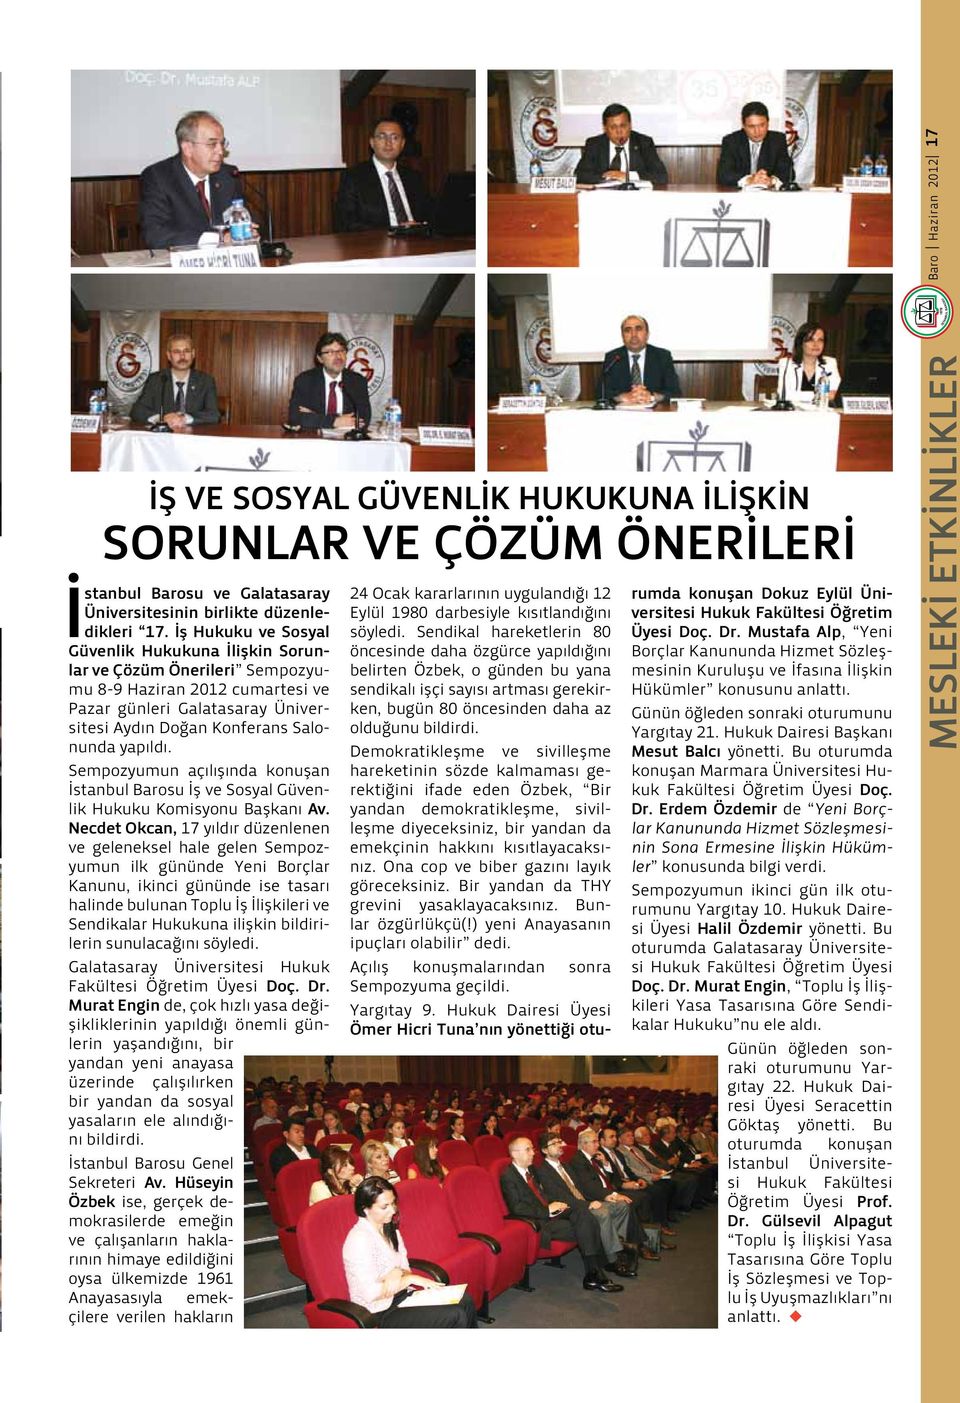 Sempozyumun açılışında konuşan İstanbul Barosu İş ve Sosyal Güvenlik Hukuku Komisyonu Başkanı Av.